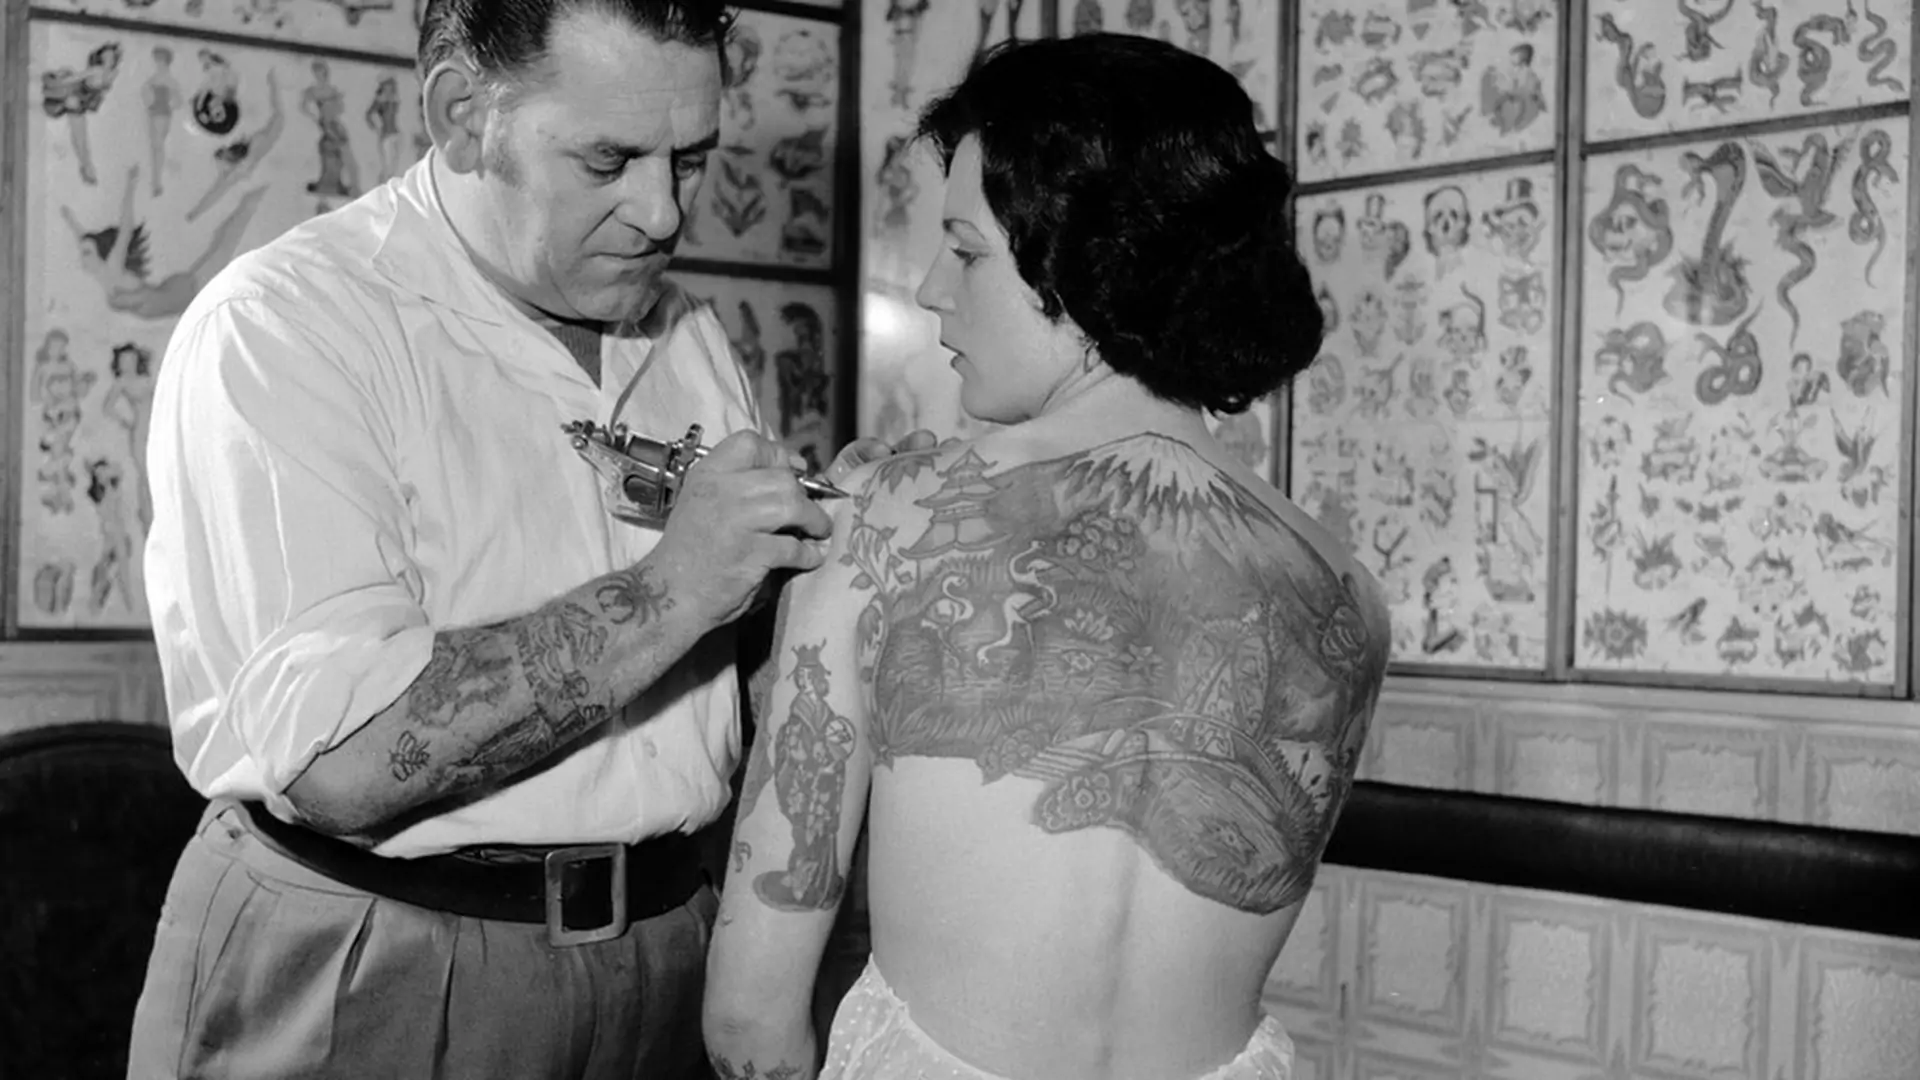 Archiwalne zdjęcia wytatuowanych osób. Zobacz, jak tatuaże wyglądały kiedyś